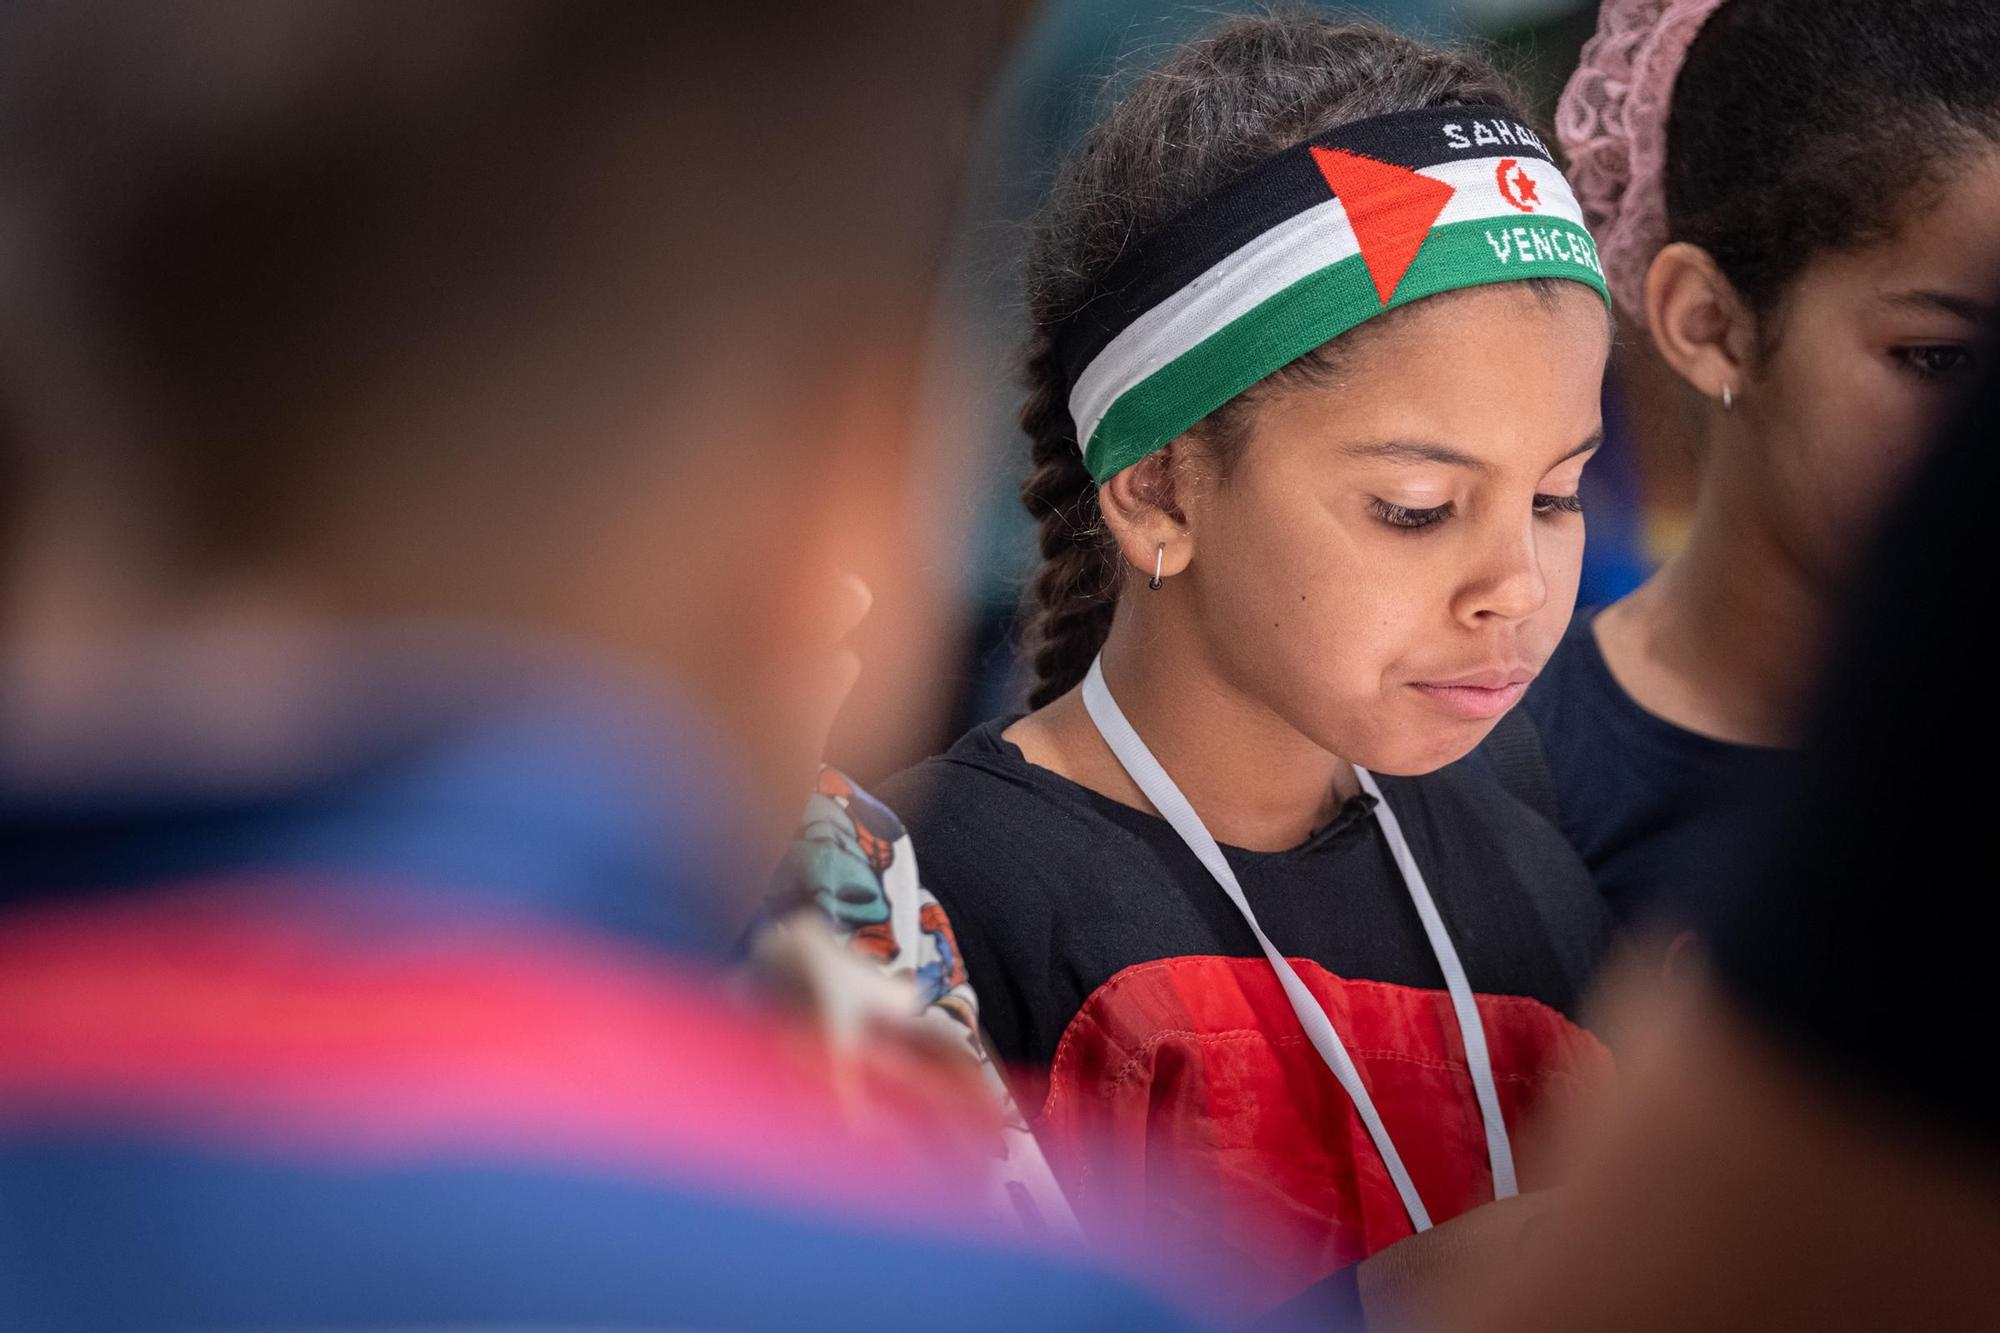 Llegada de niños y niñas saharauis del programa Vacaciones en Paz